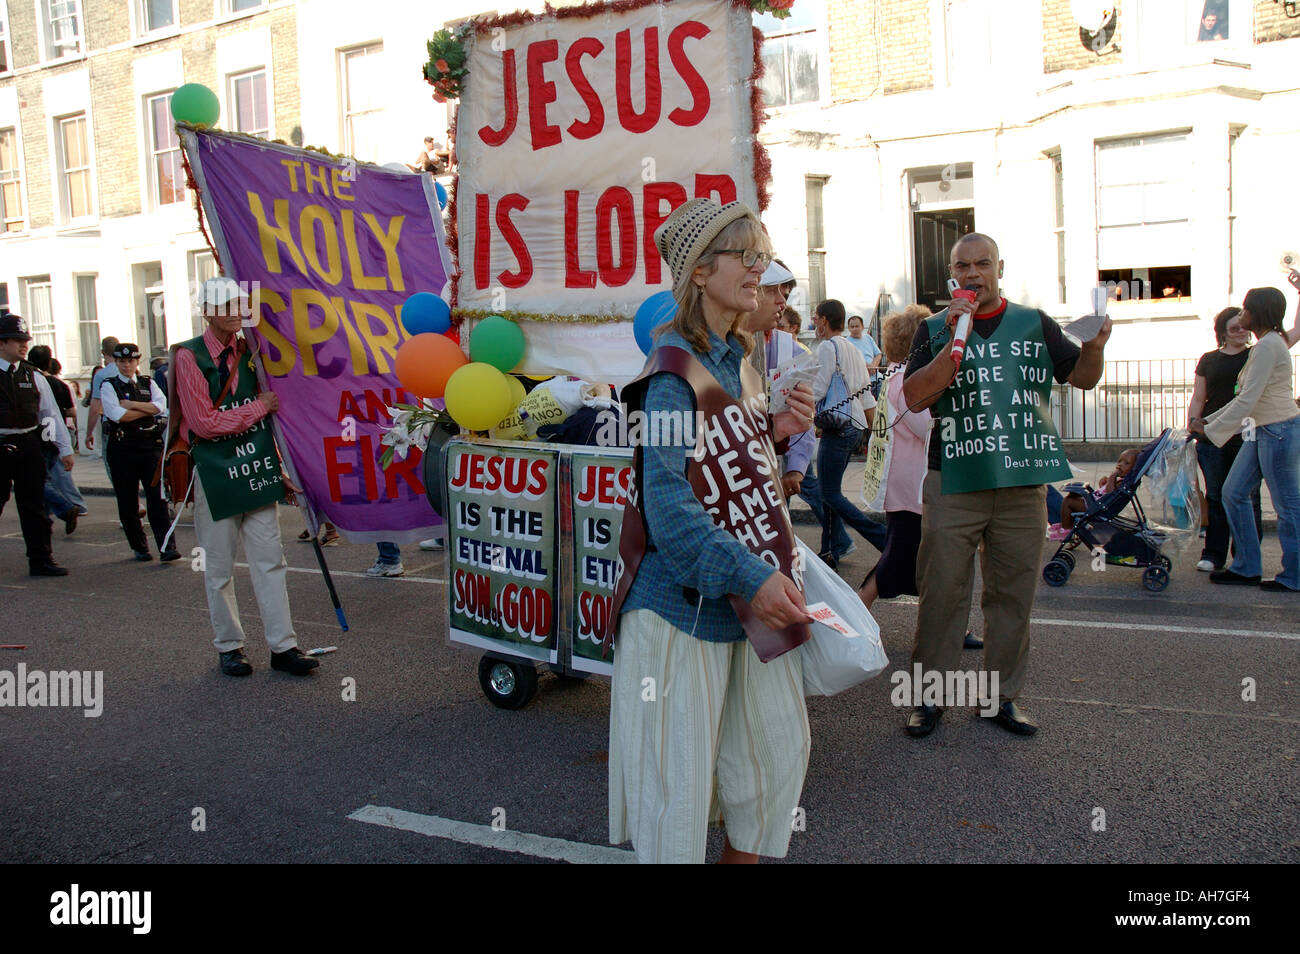 Groupe de culte religieux prône la prédication et la diffusion de leur parole à travers la rue de Londres. Banque D'Images